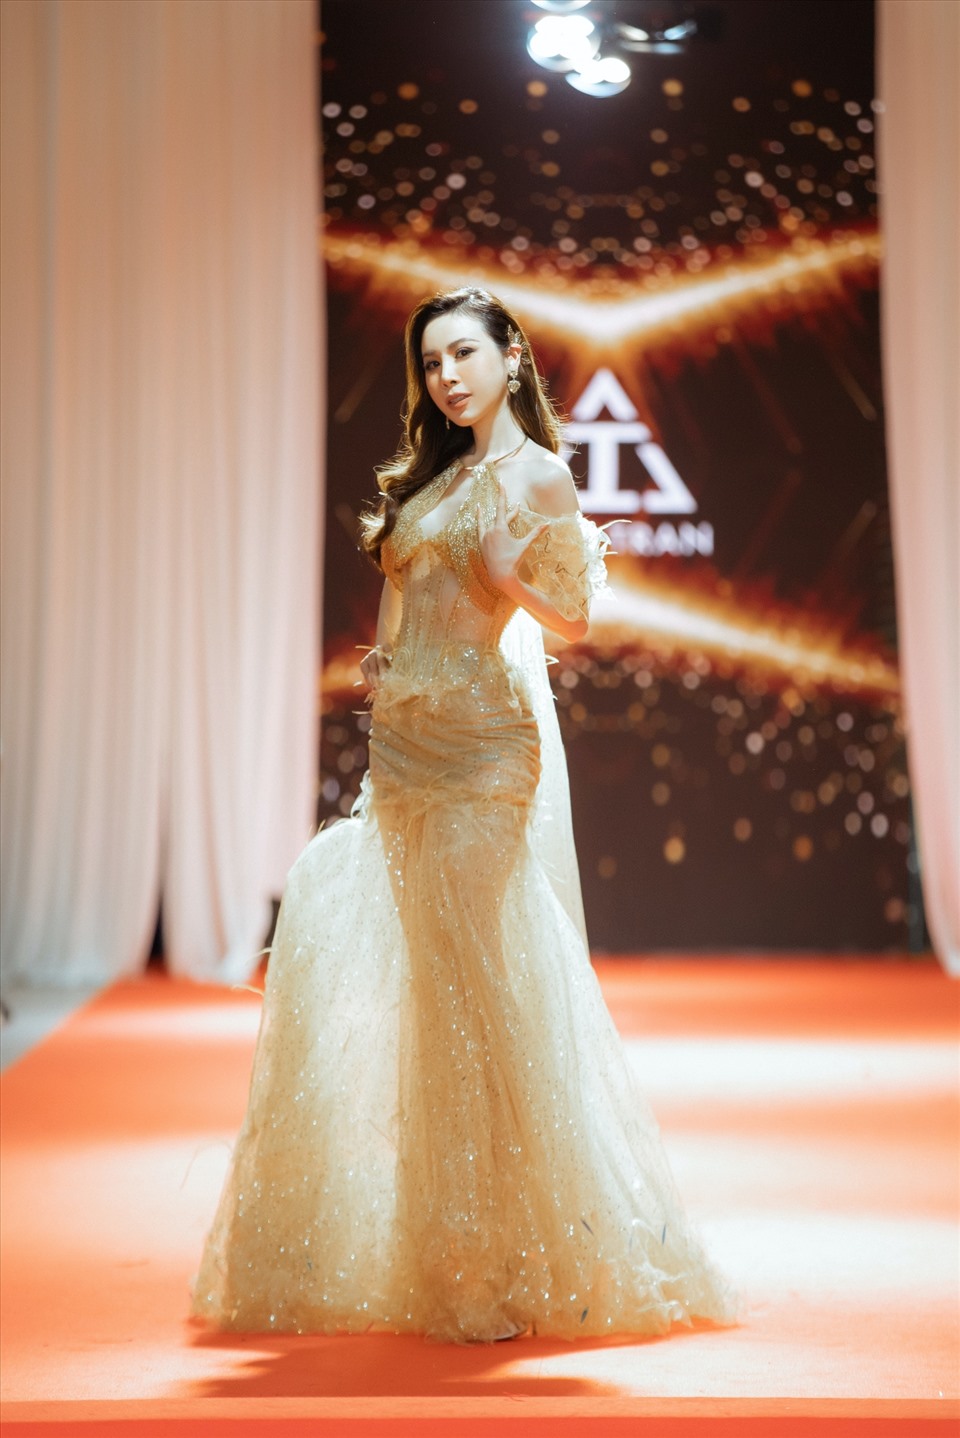 Hoa hậu Áo dài 2017 Hoàng Dung quyến rũ và gợi cảm trong một chiếc đầm vàng đuôi cá lấp lánh, cut-out phần ngực cùng họa tiết trúc được thêu tay thủ công độc đáo. Ảnh: NVCC.